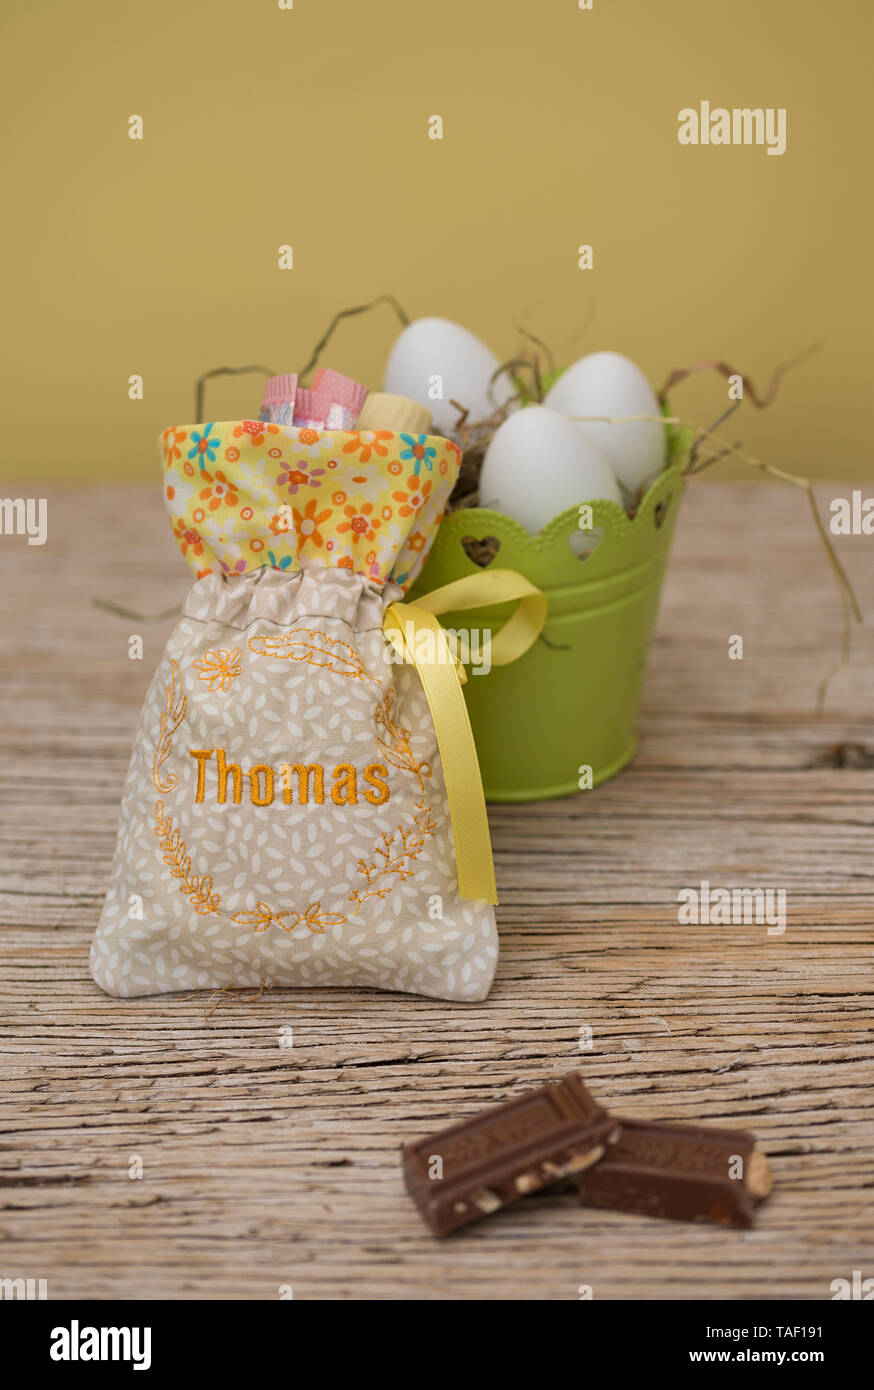 Eine kleine Tasche mit Geschenken hat einen hübschen Stickerei. Es ist der Name Thomas. Hinter der Tasche ist Platz und ein Easter Nest mit Eiern zu kopieren. Pastellfarbenen natur Stockfoto